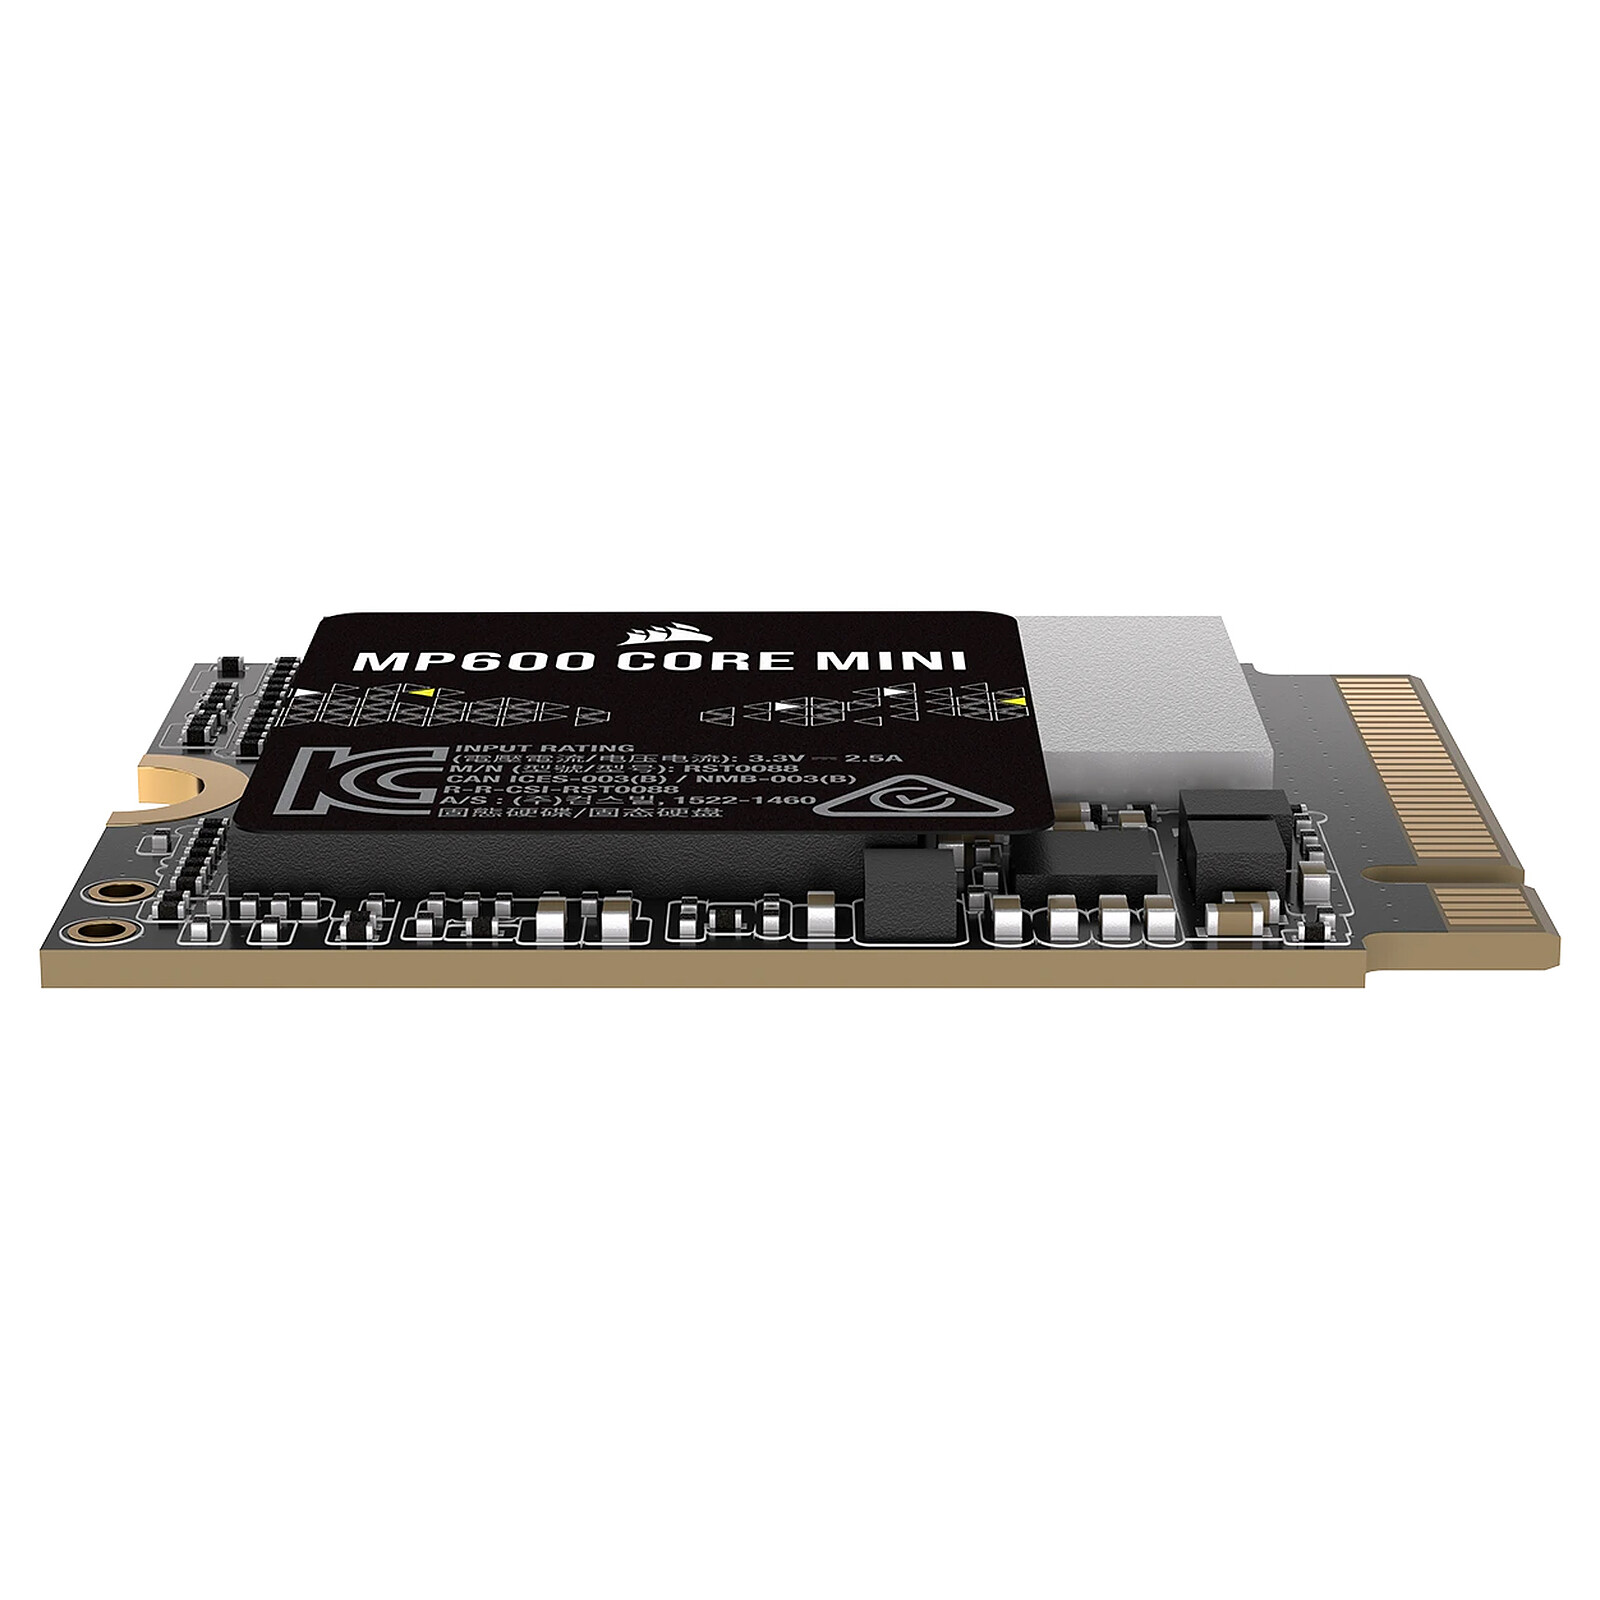 CORSAIR MP600 CORE 1To M.2 NVME PCI 4.0 